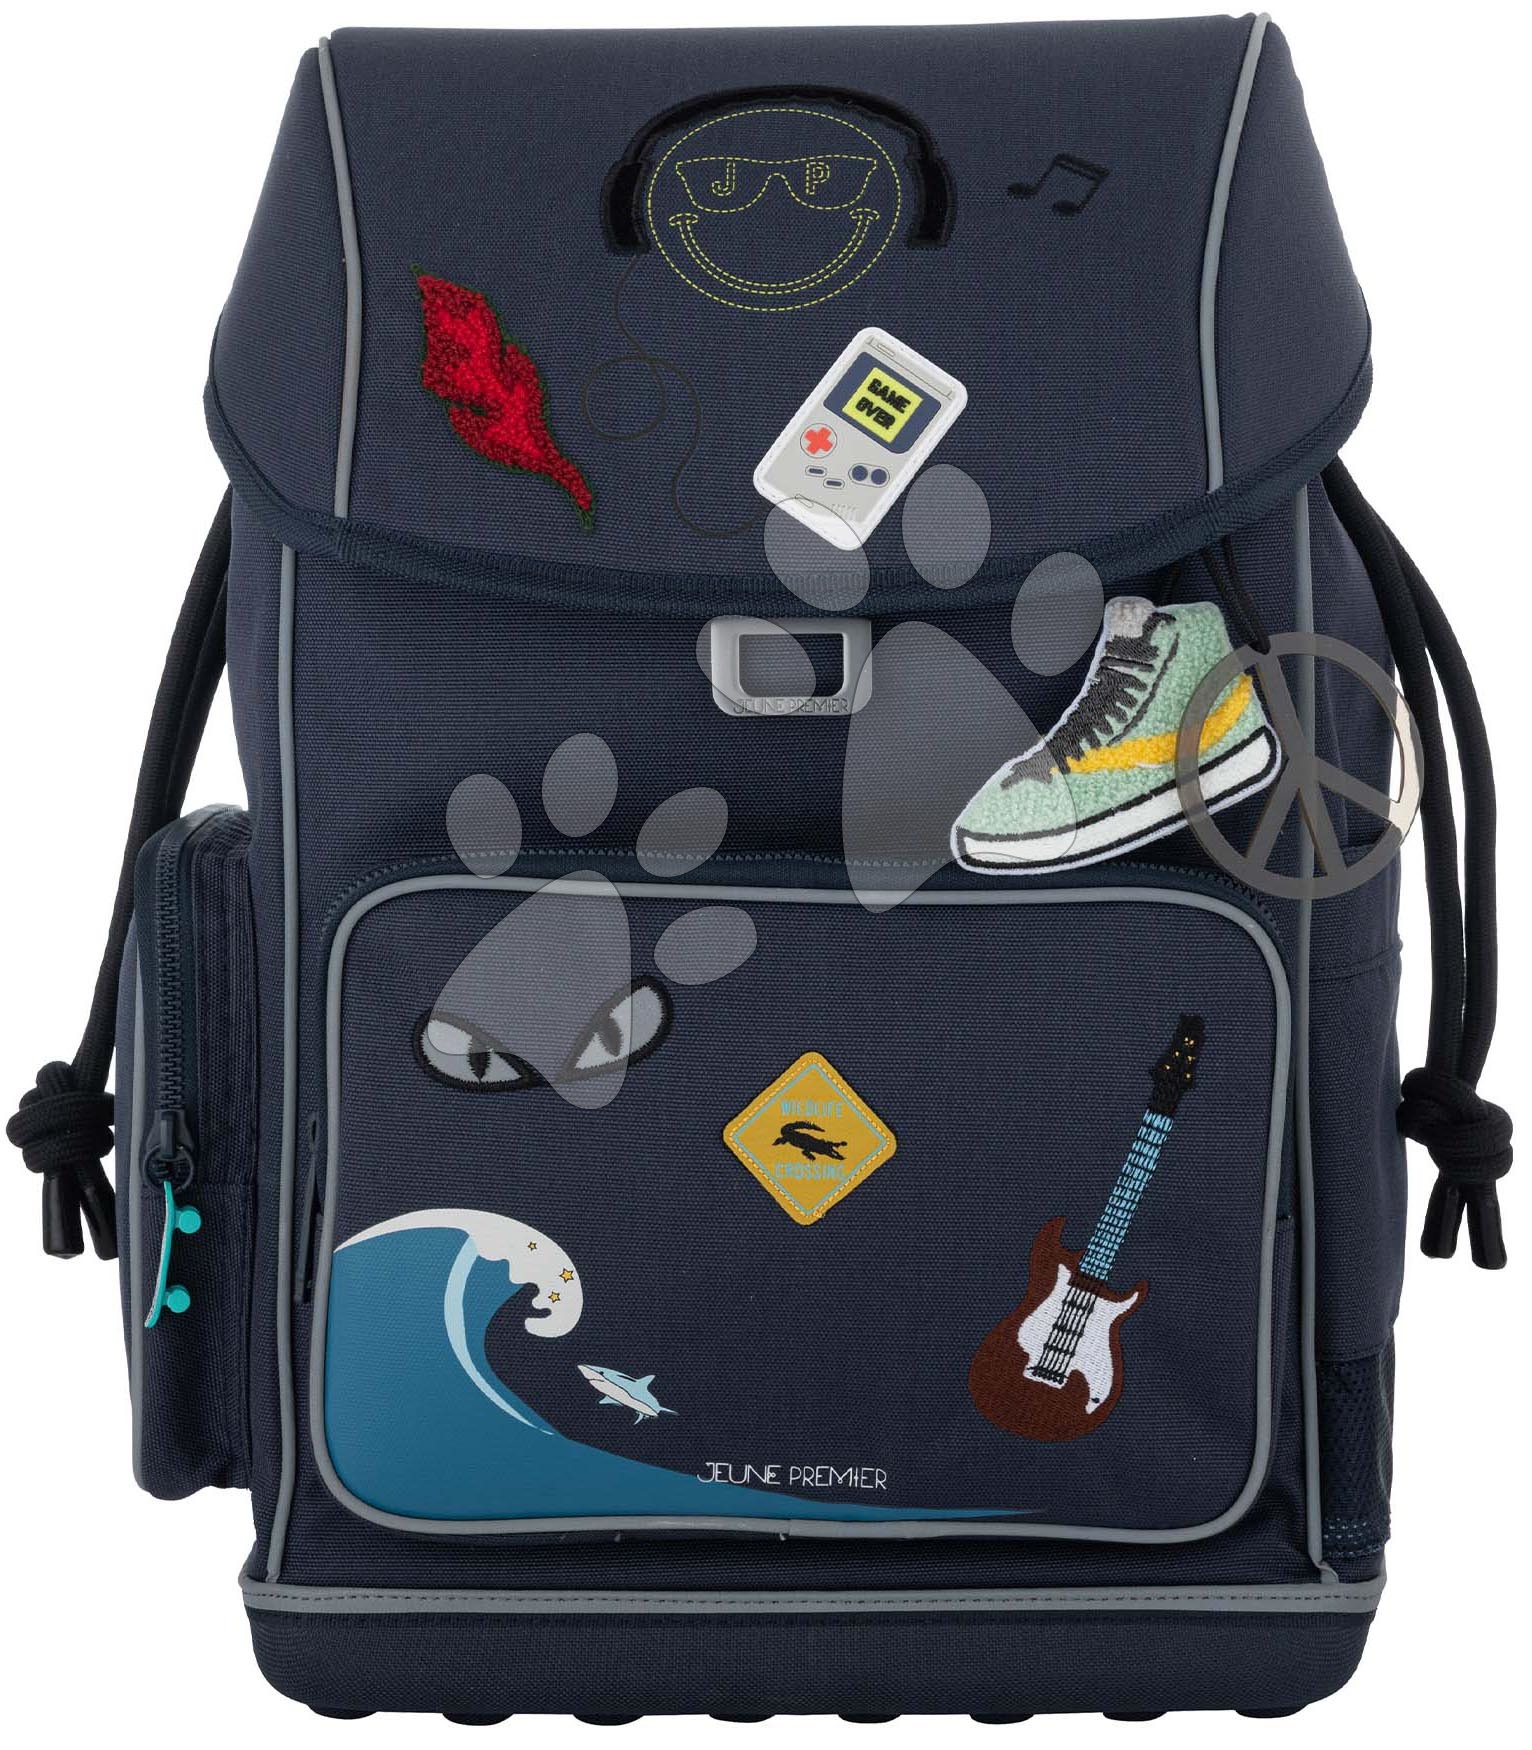 Školské tašky a batohy - Školský batoh veľký Ergomaxx Mr. Gadget Jeune Premier ergonomický luxusné prevedenie 39*26 cm